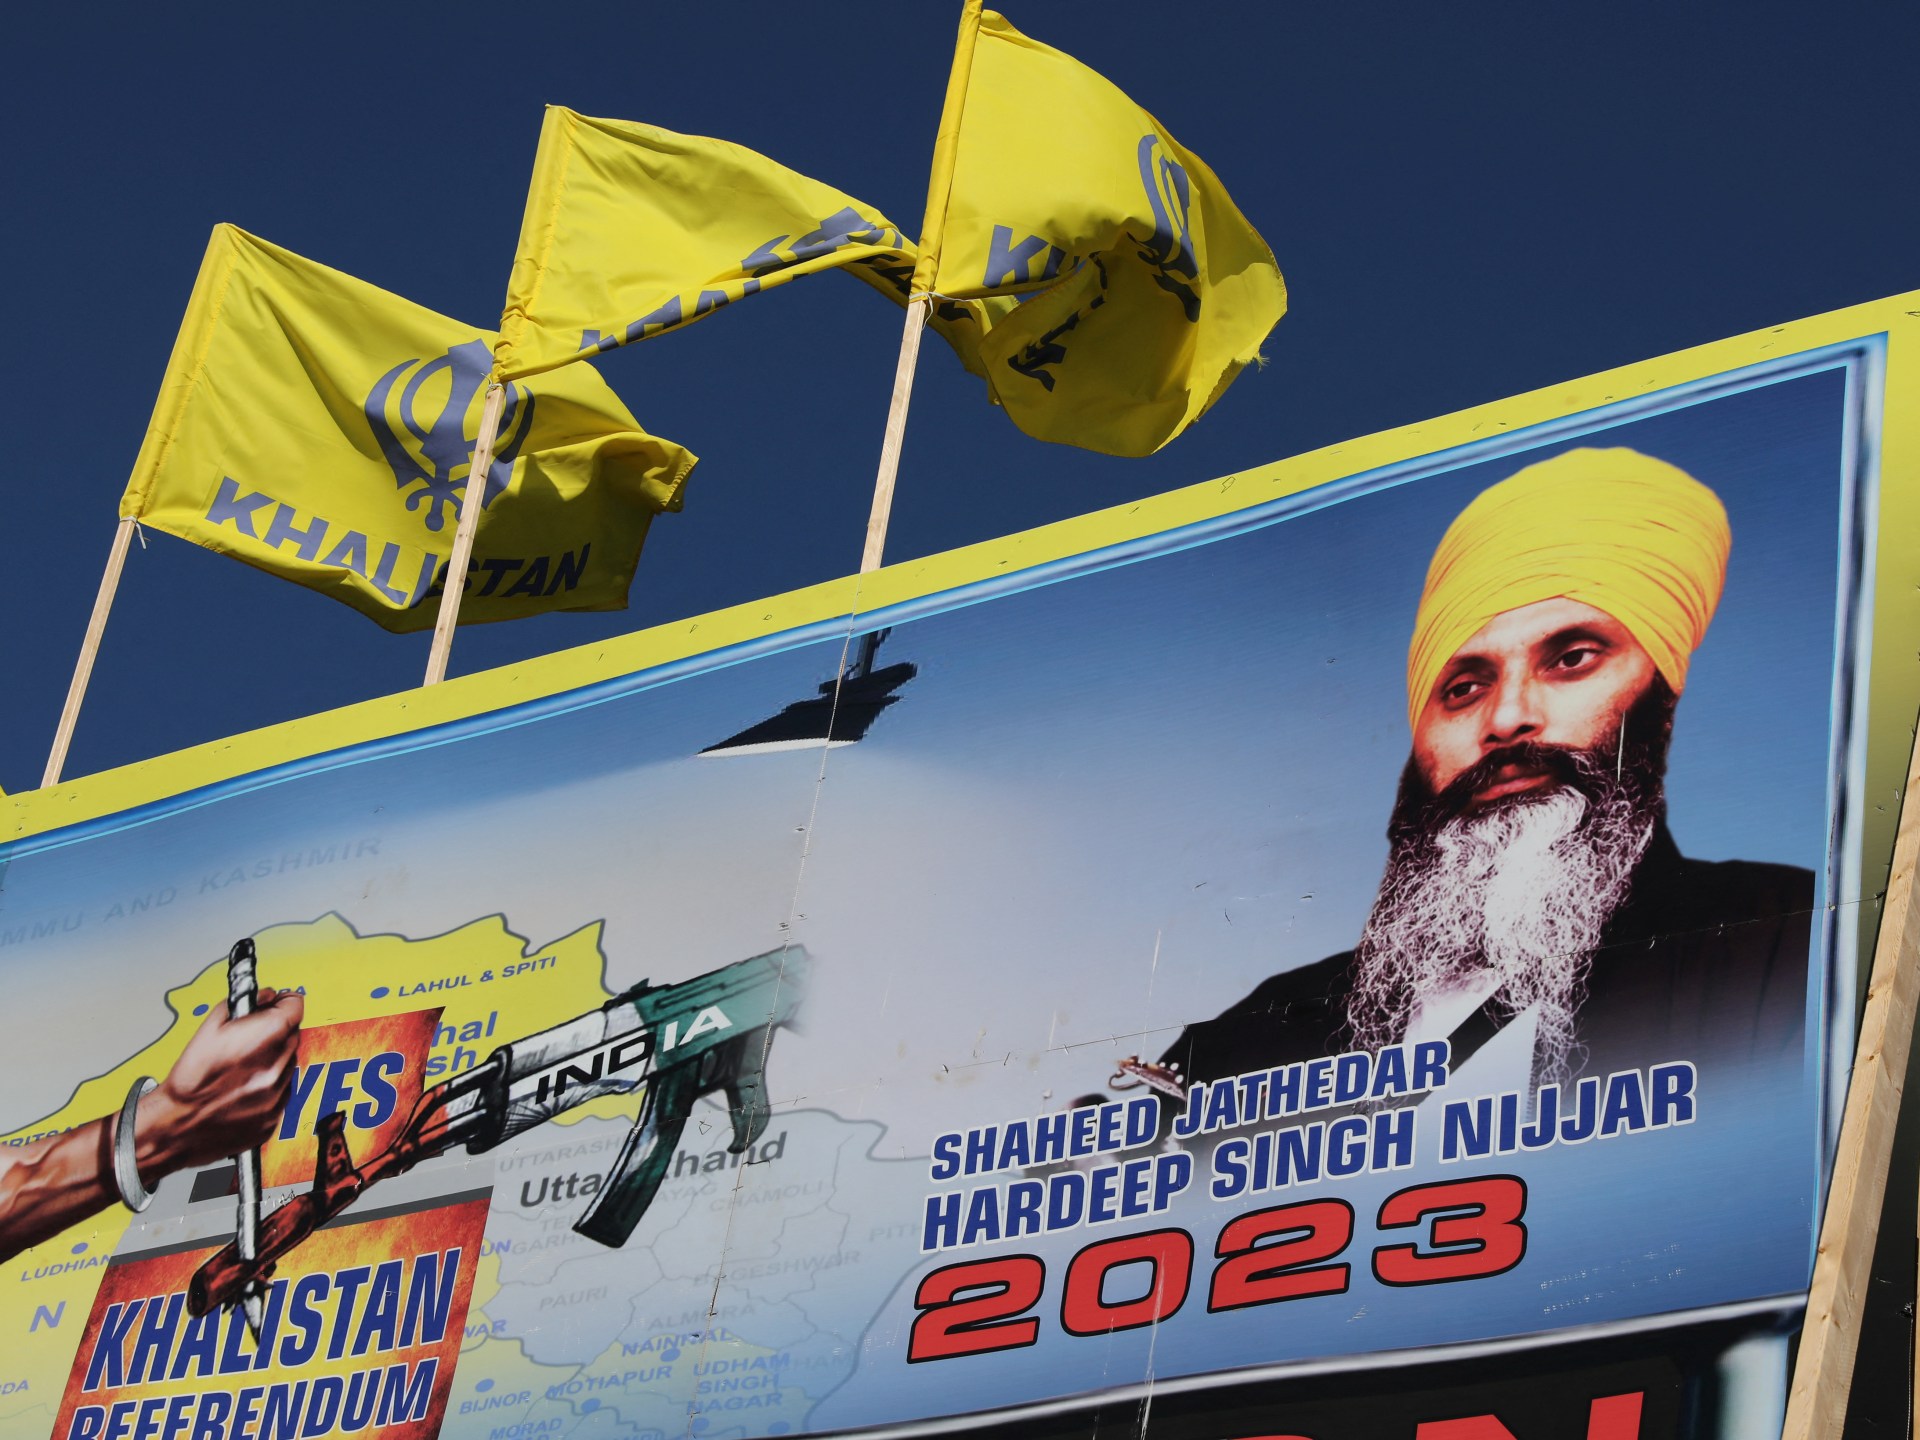 Índia descreve prisões canadenses pelo assassinato de um ativista Sikh como “coerção política” |  Notícias de política